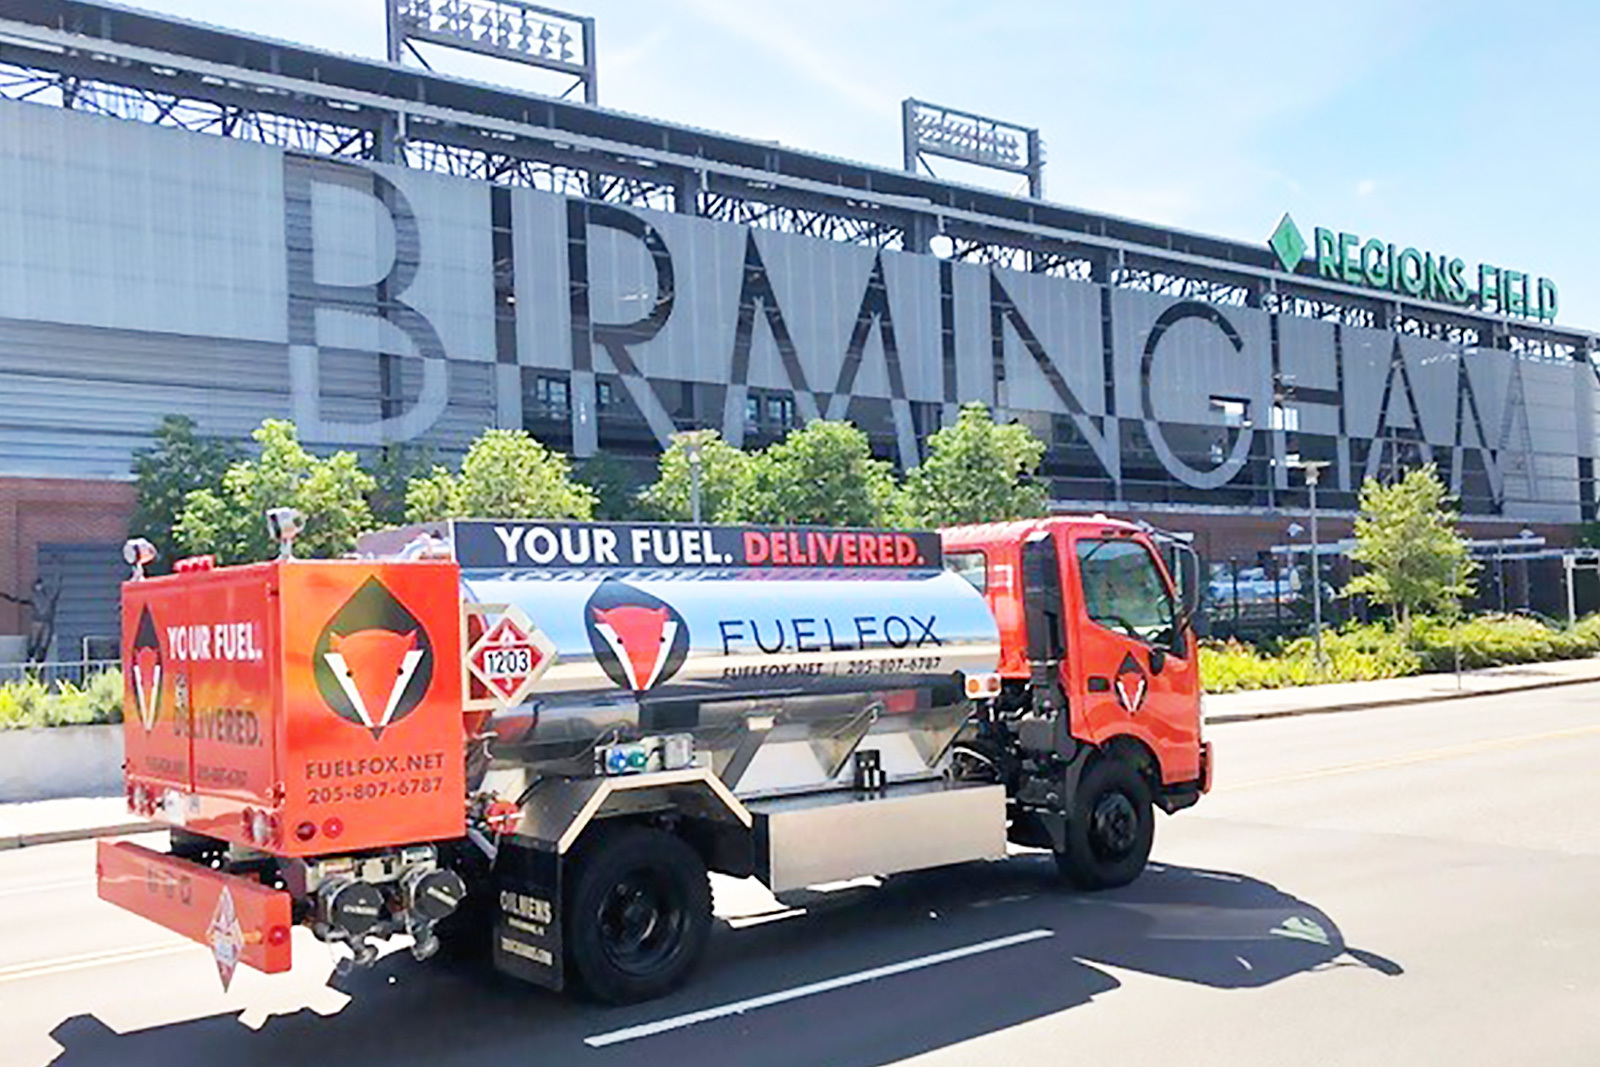 Fuelfox truck in front of Regions Field in Birmingham Alabama